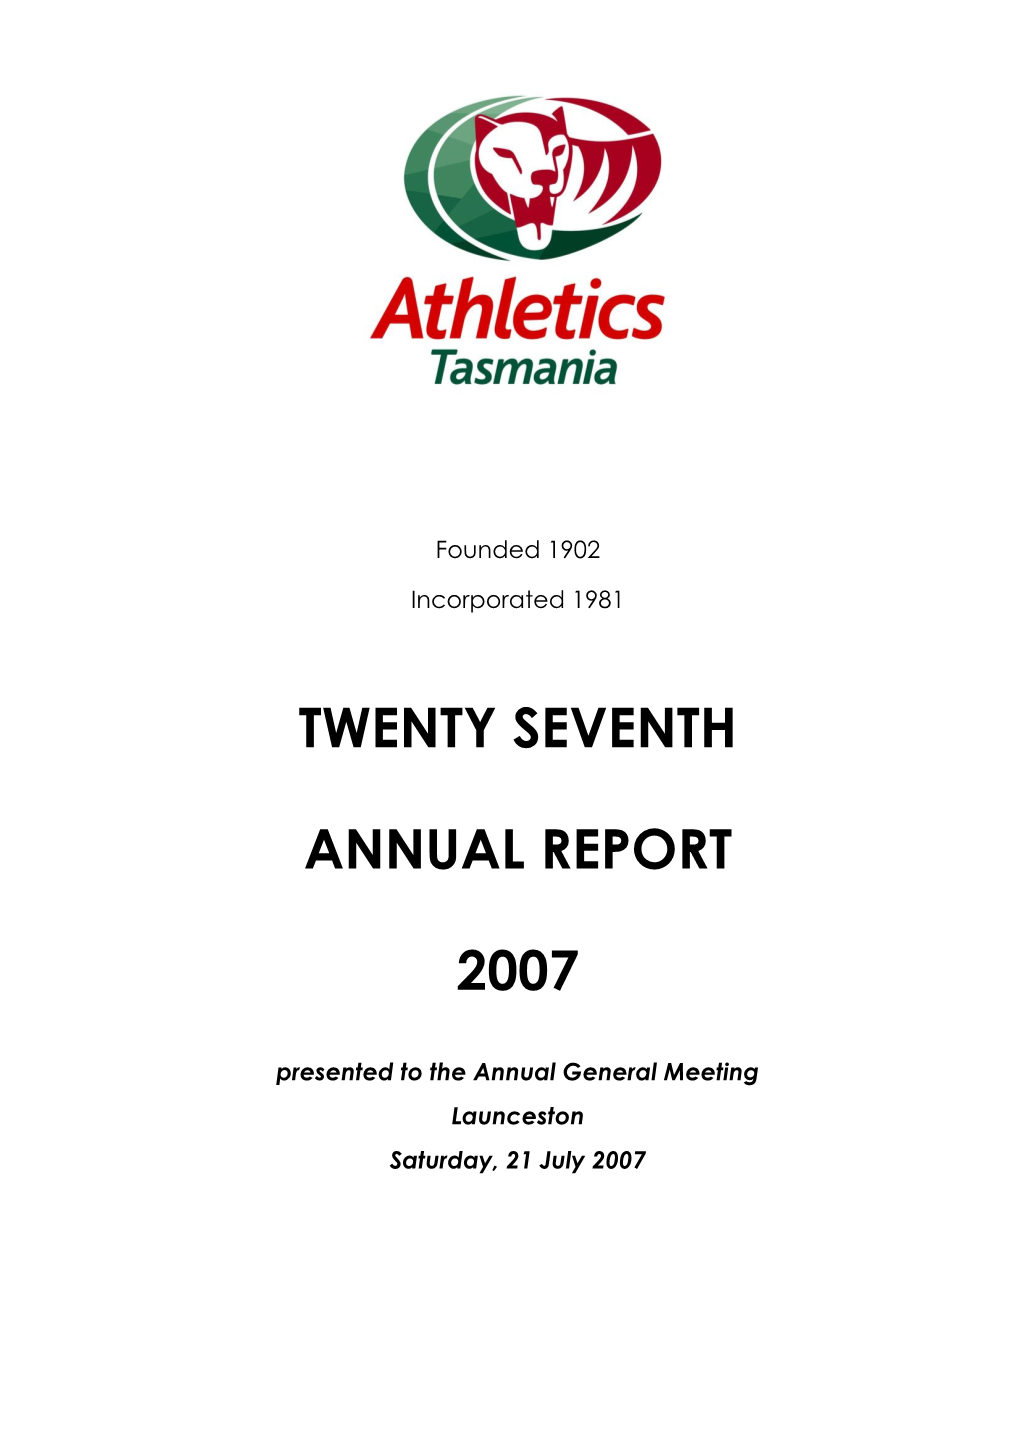 Athletics Tasmania Annual Report